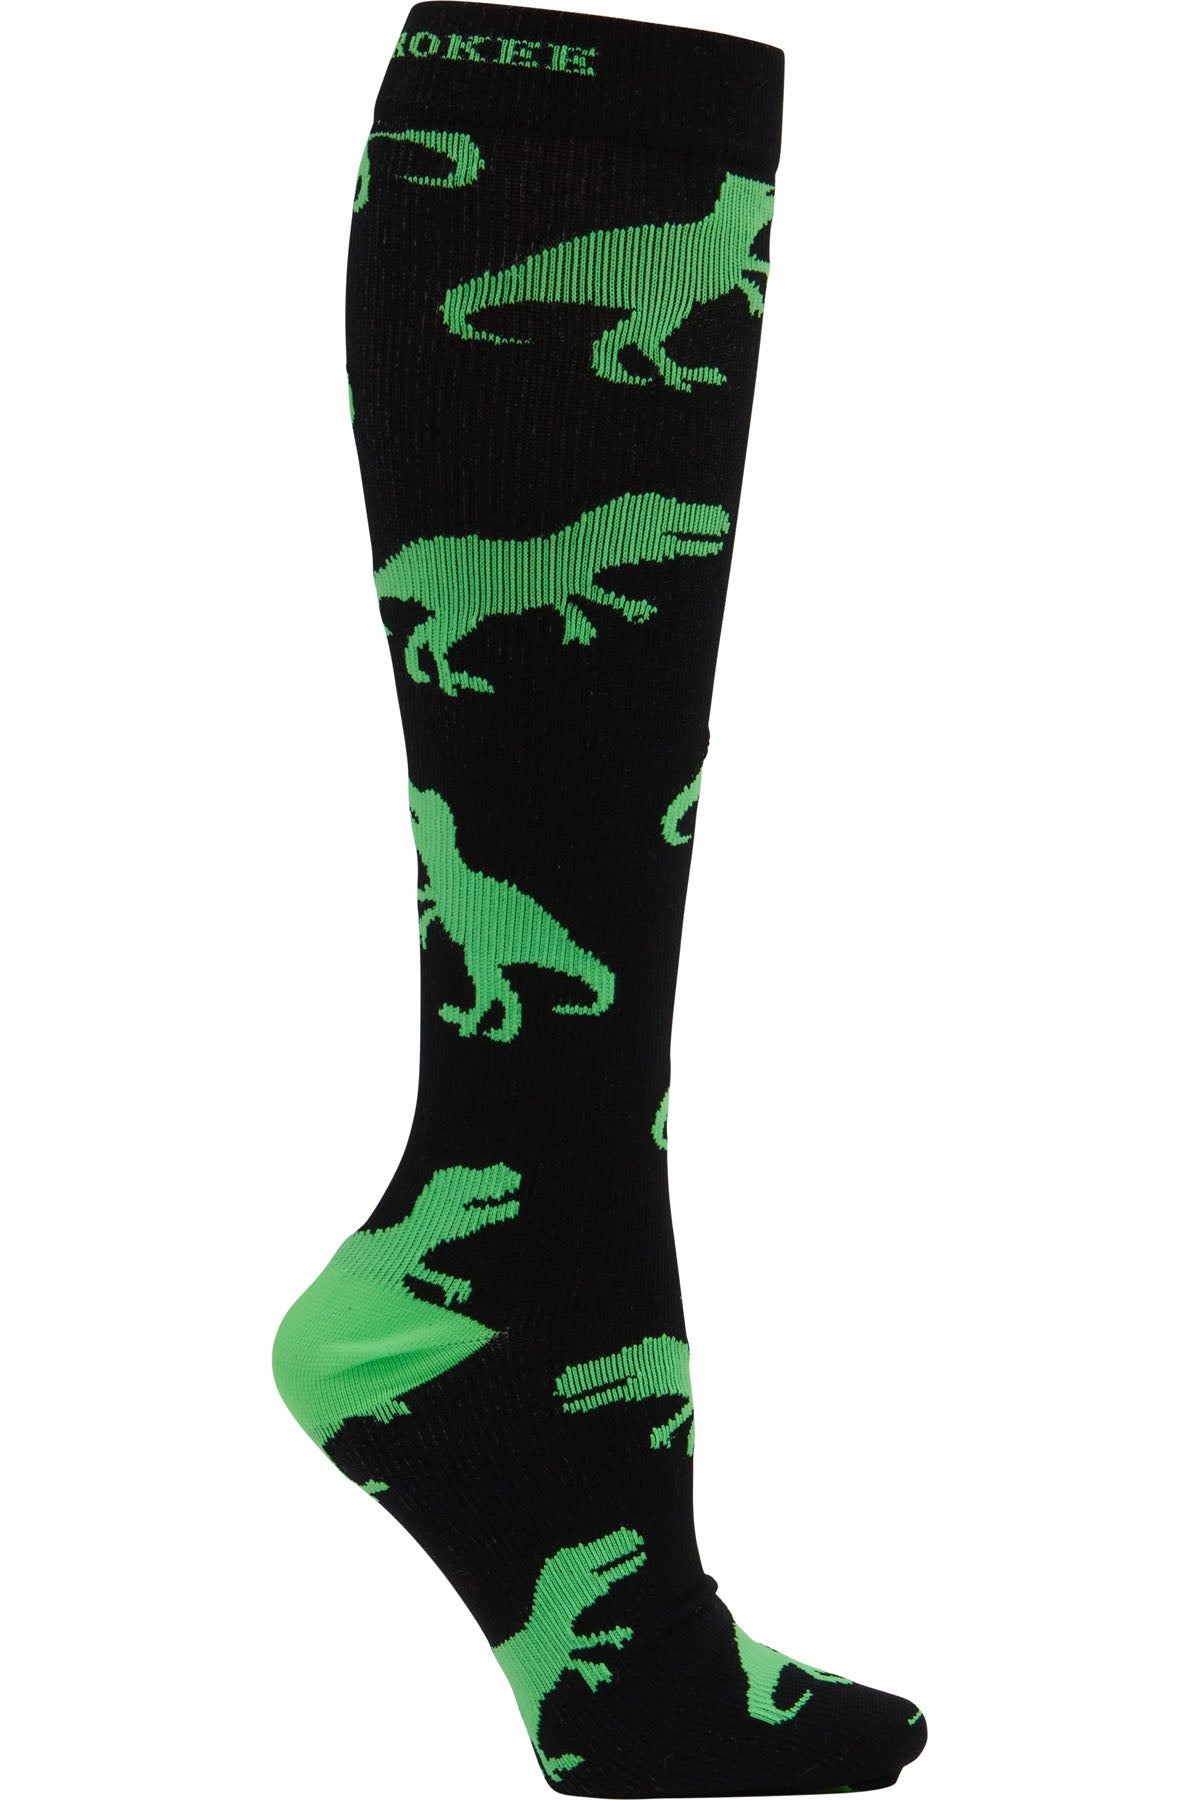 Men's Compression Socks 10-15mmHg Men's Compression Socks Cherokee Legwear T-Rex  